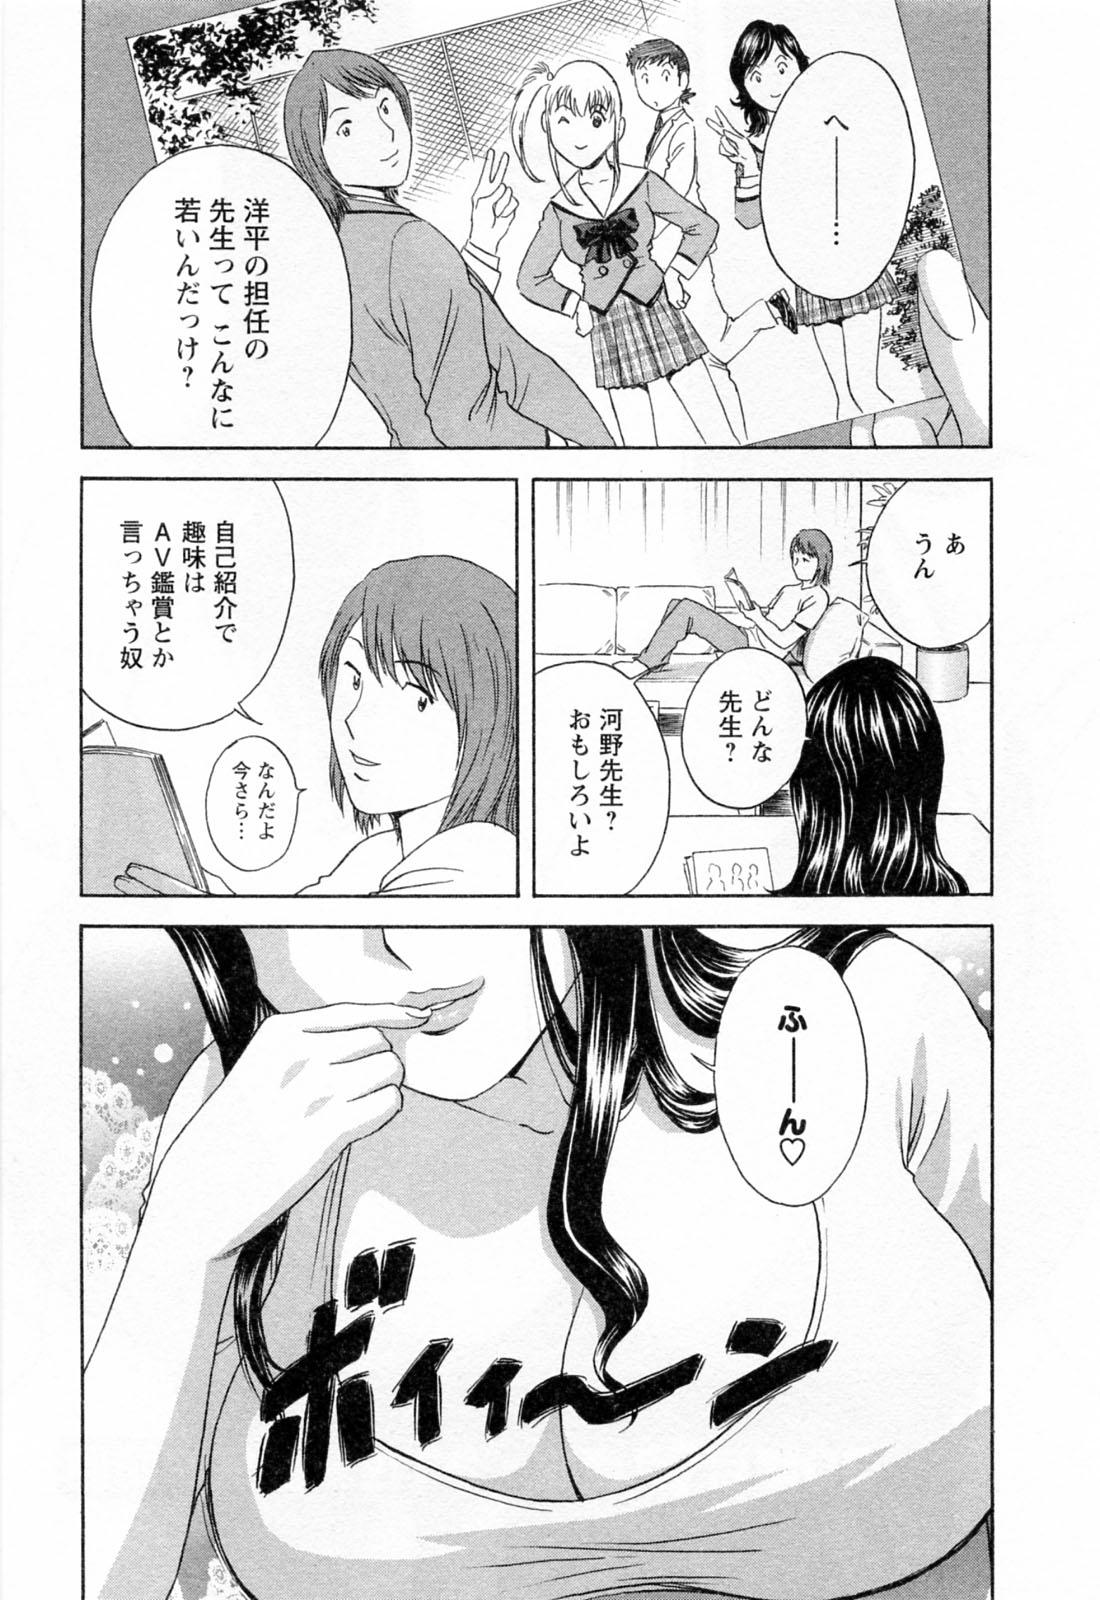 [Hidemaru] Mo-Retsu! Boin Sensei (Boing Boing Teacher) Vol.4 54